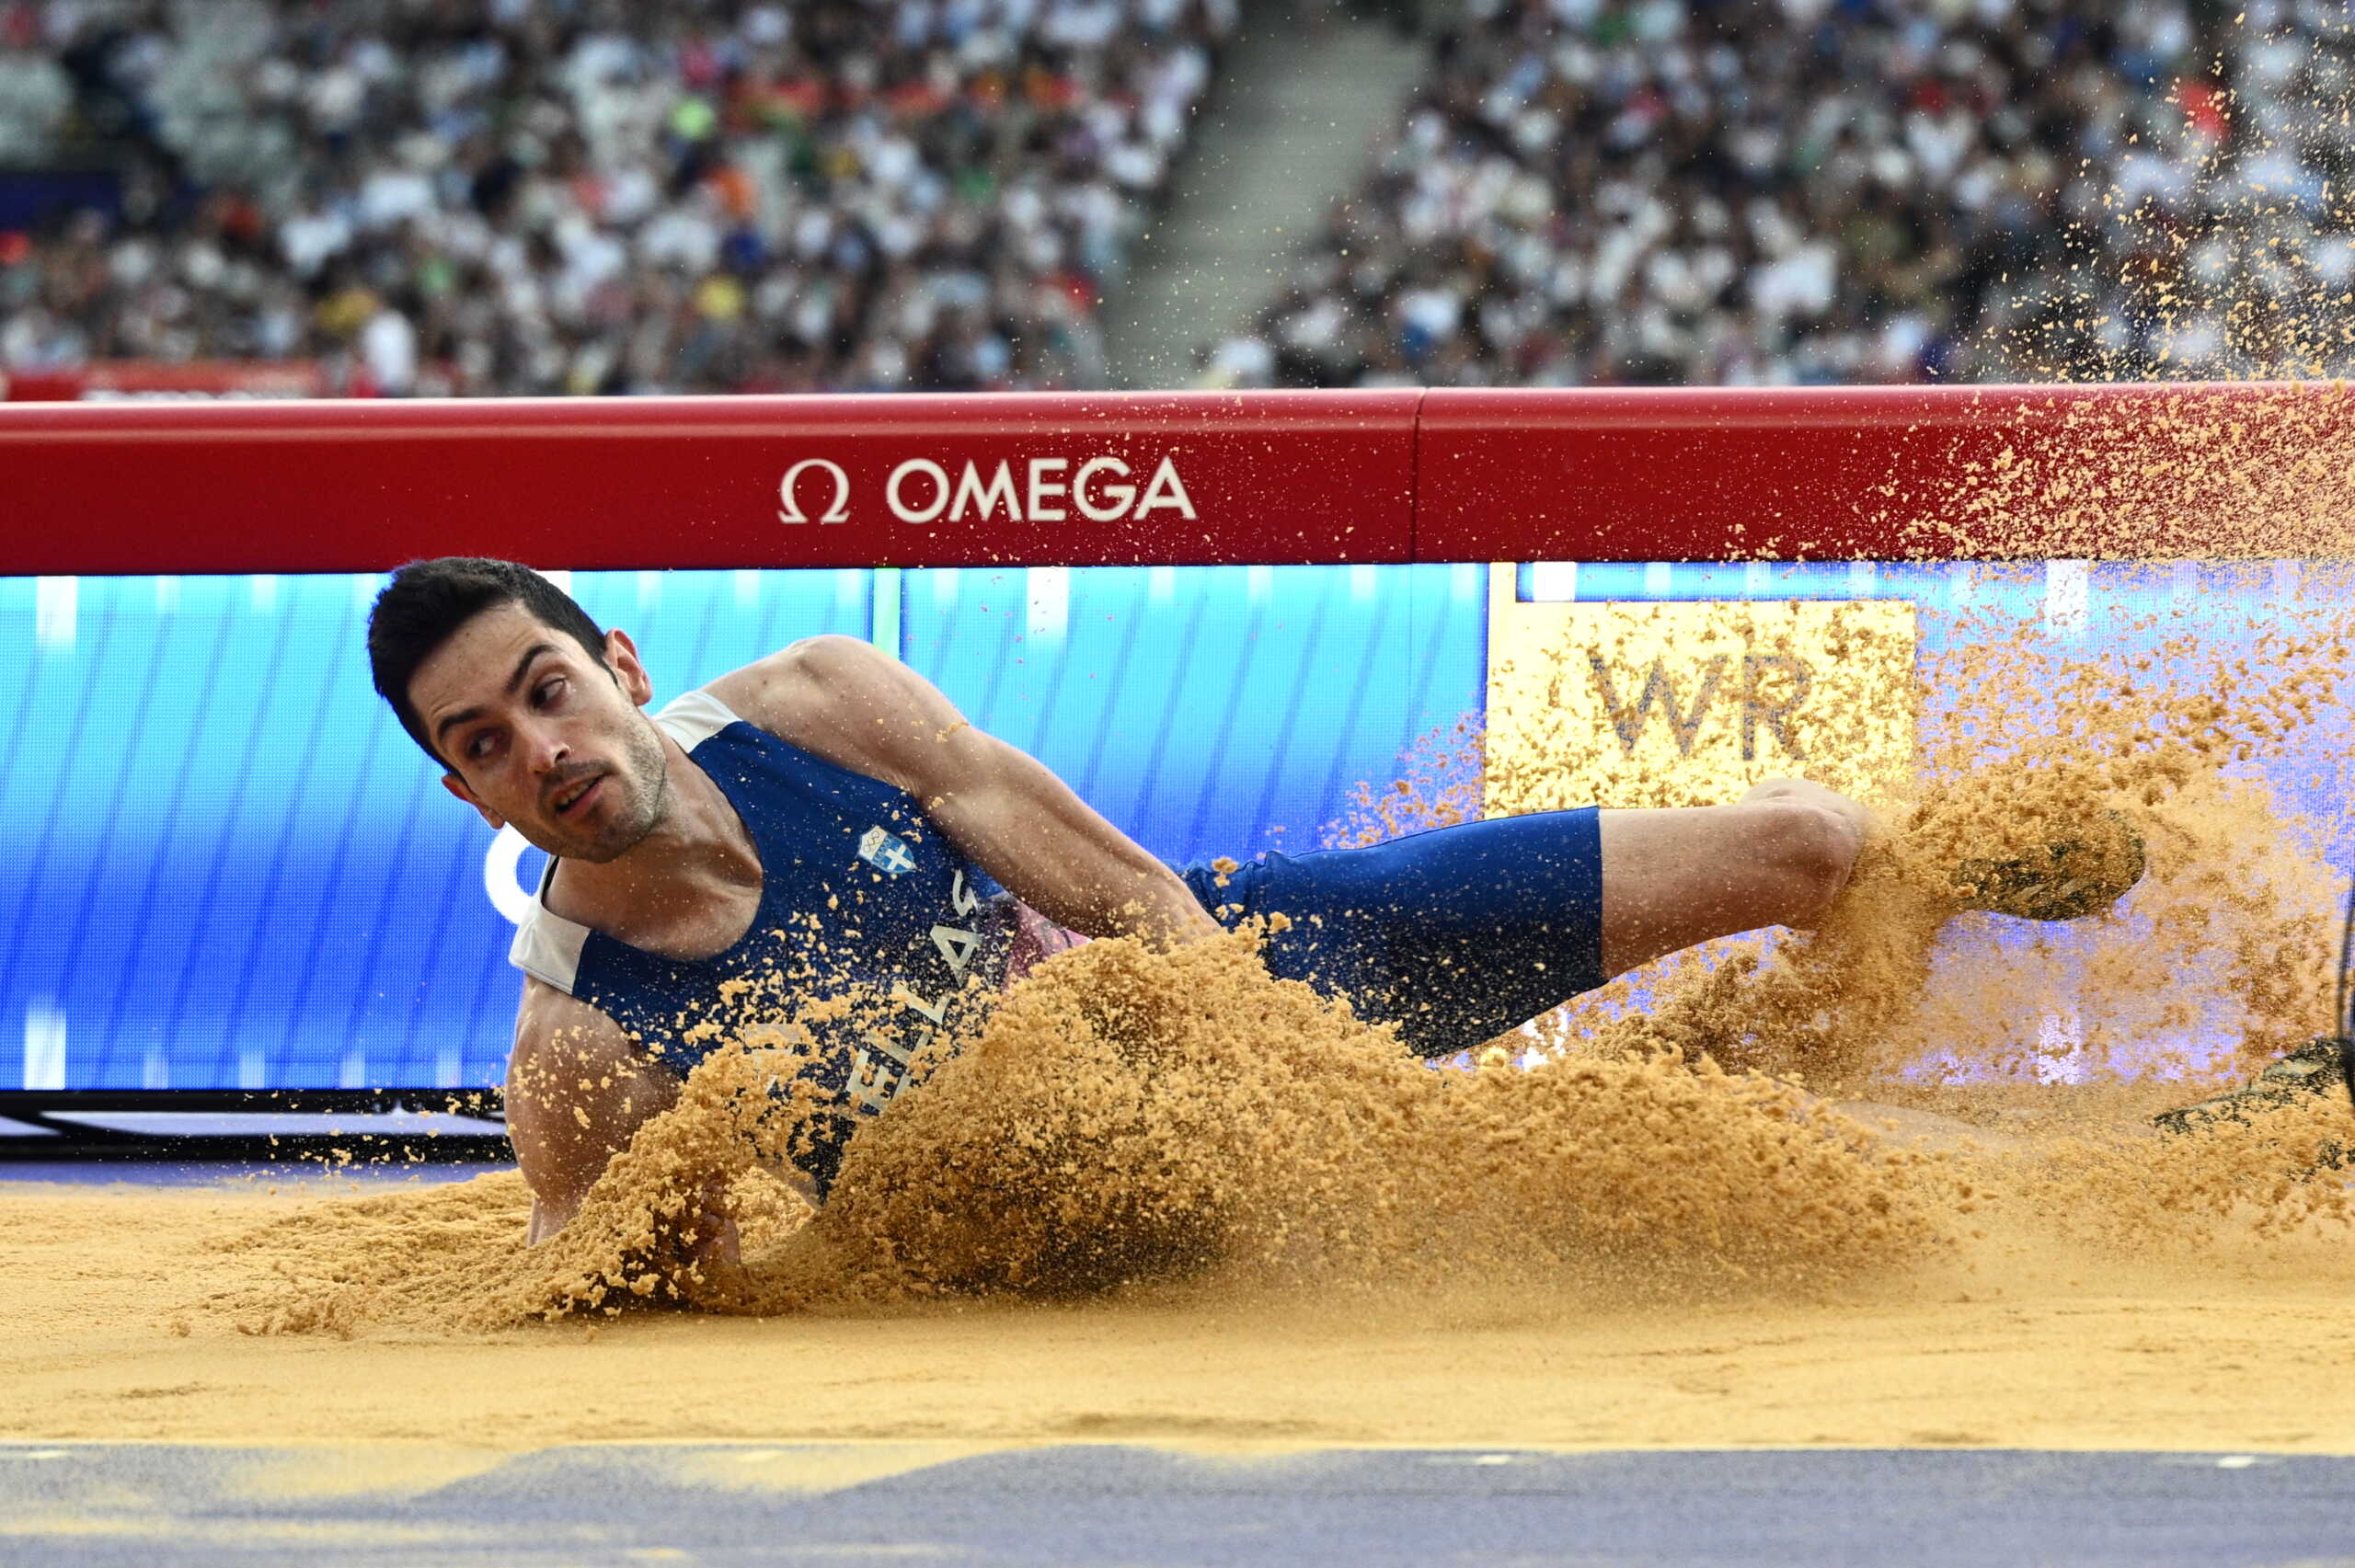 Ο Μίλτος Τεντόγλου απογειώθηκε στα 8.48μ. στον τελικό του μήκους των Ολυμπιακών Αγώνων